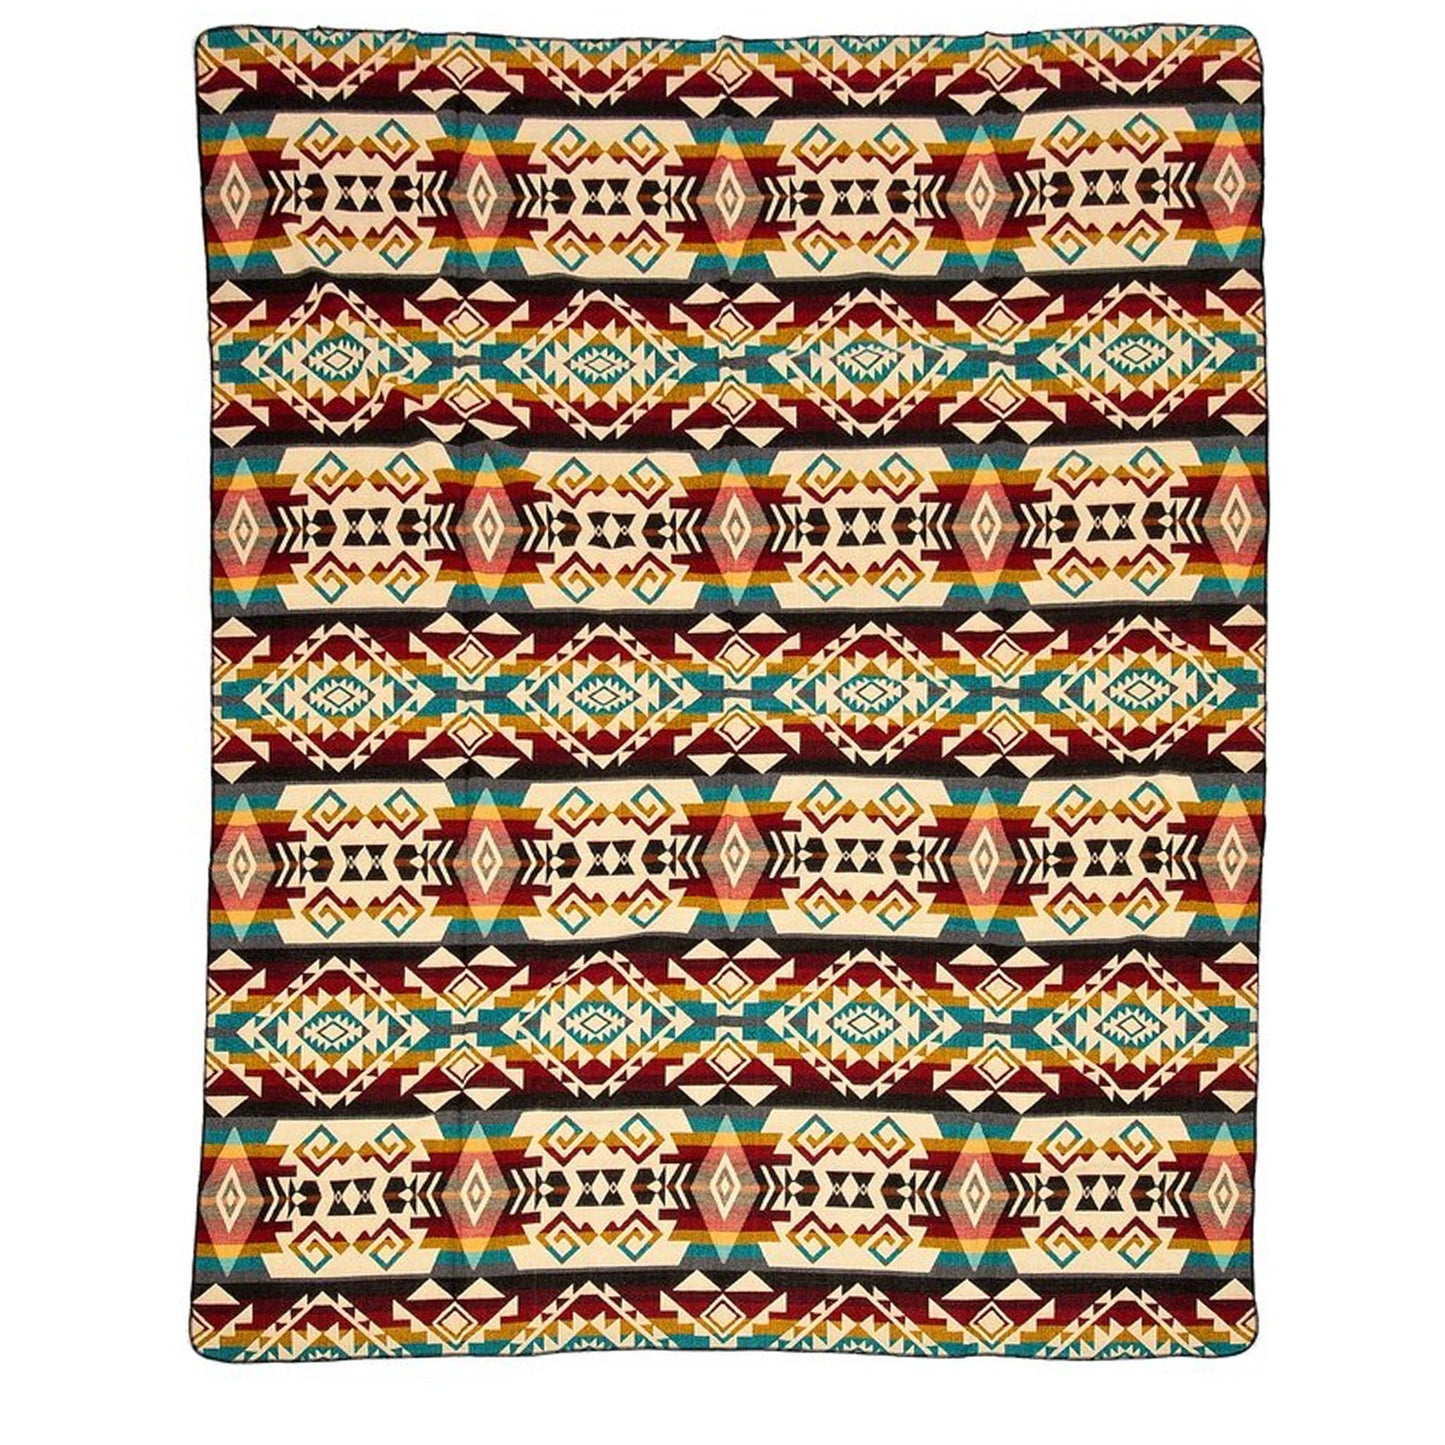 Authentische Chimborazo Decke aus Alpaka Wolle - 195 x 235 cm - Warmer, bunter Mix